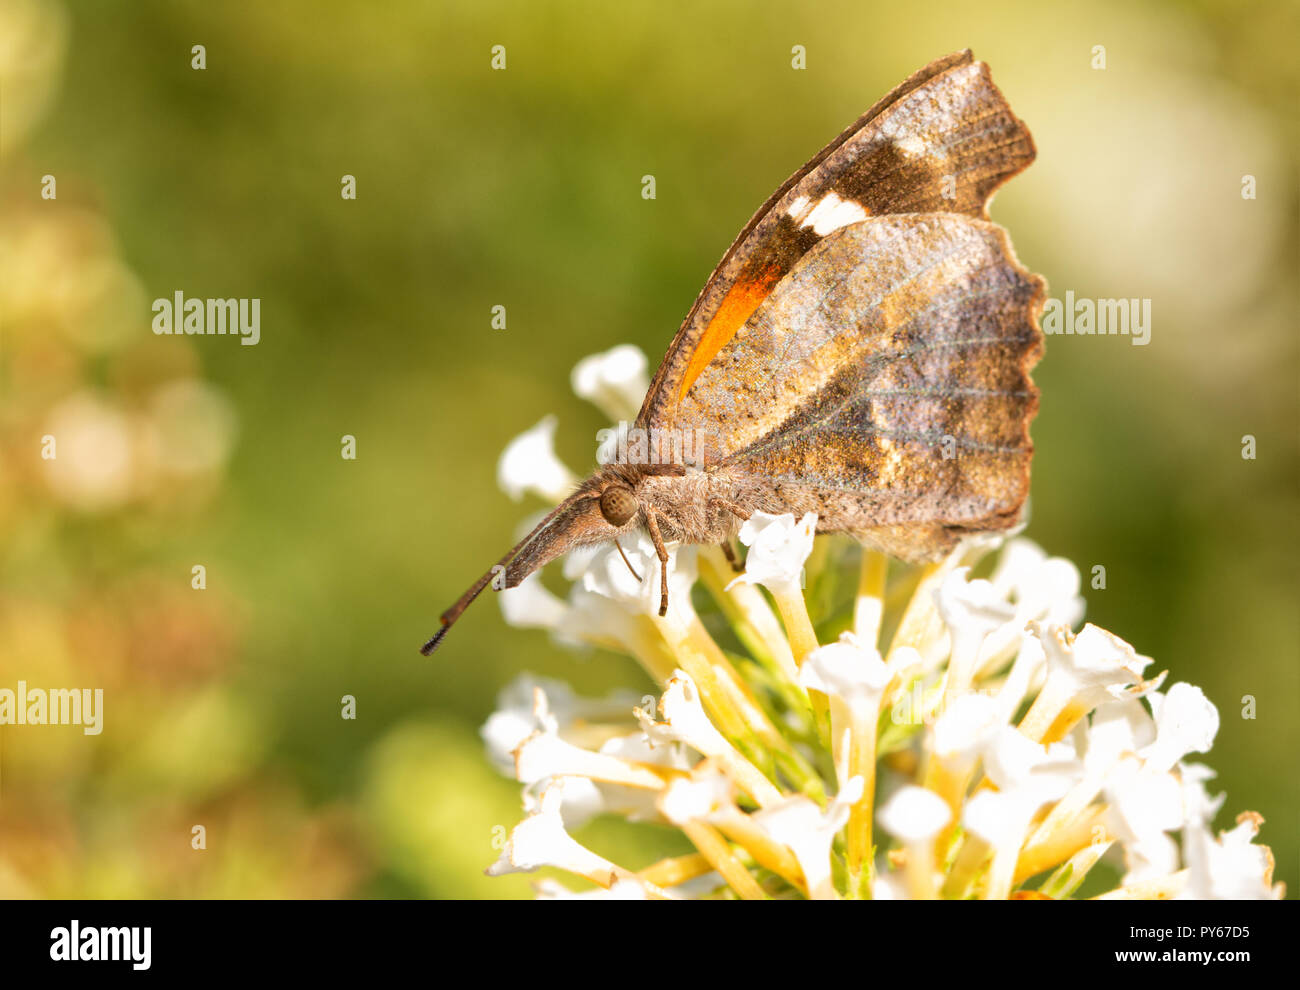 Nahaufnahme eines amerikanischen Schnauze Schmetterling feeing auf weiße Blüten, ventrale Ansicht Stockfoto